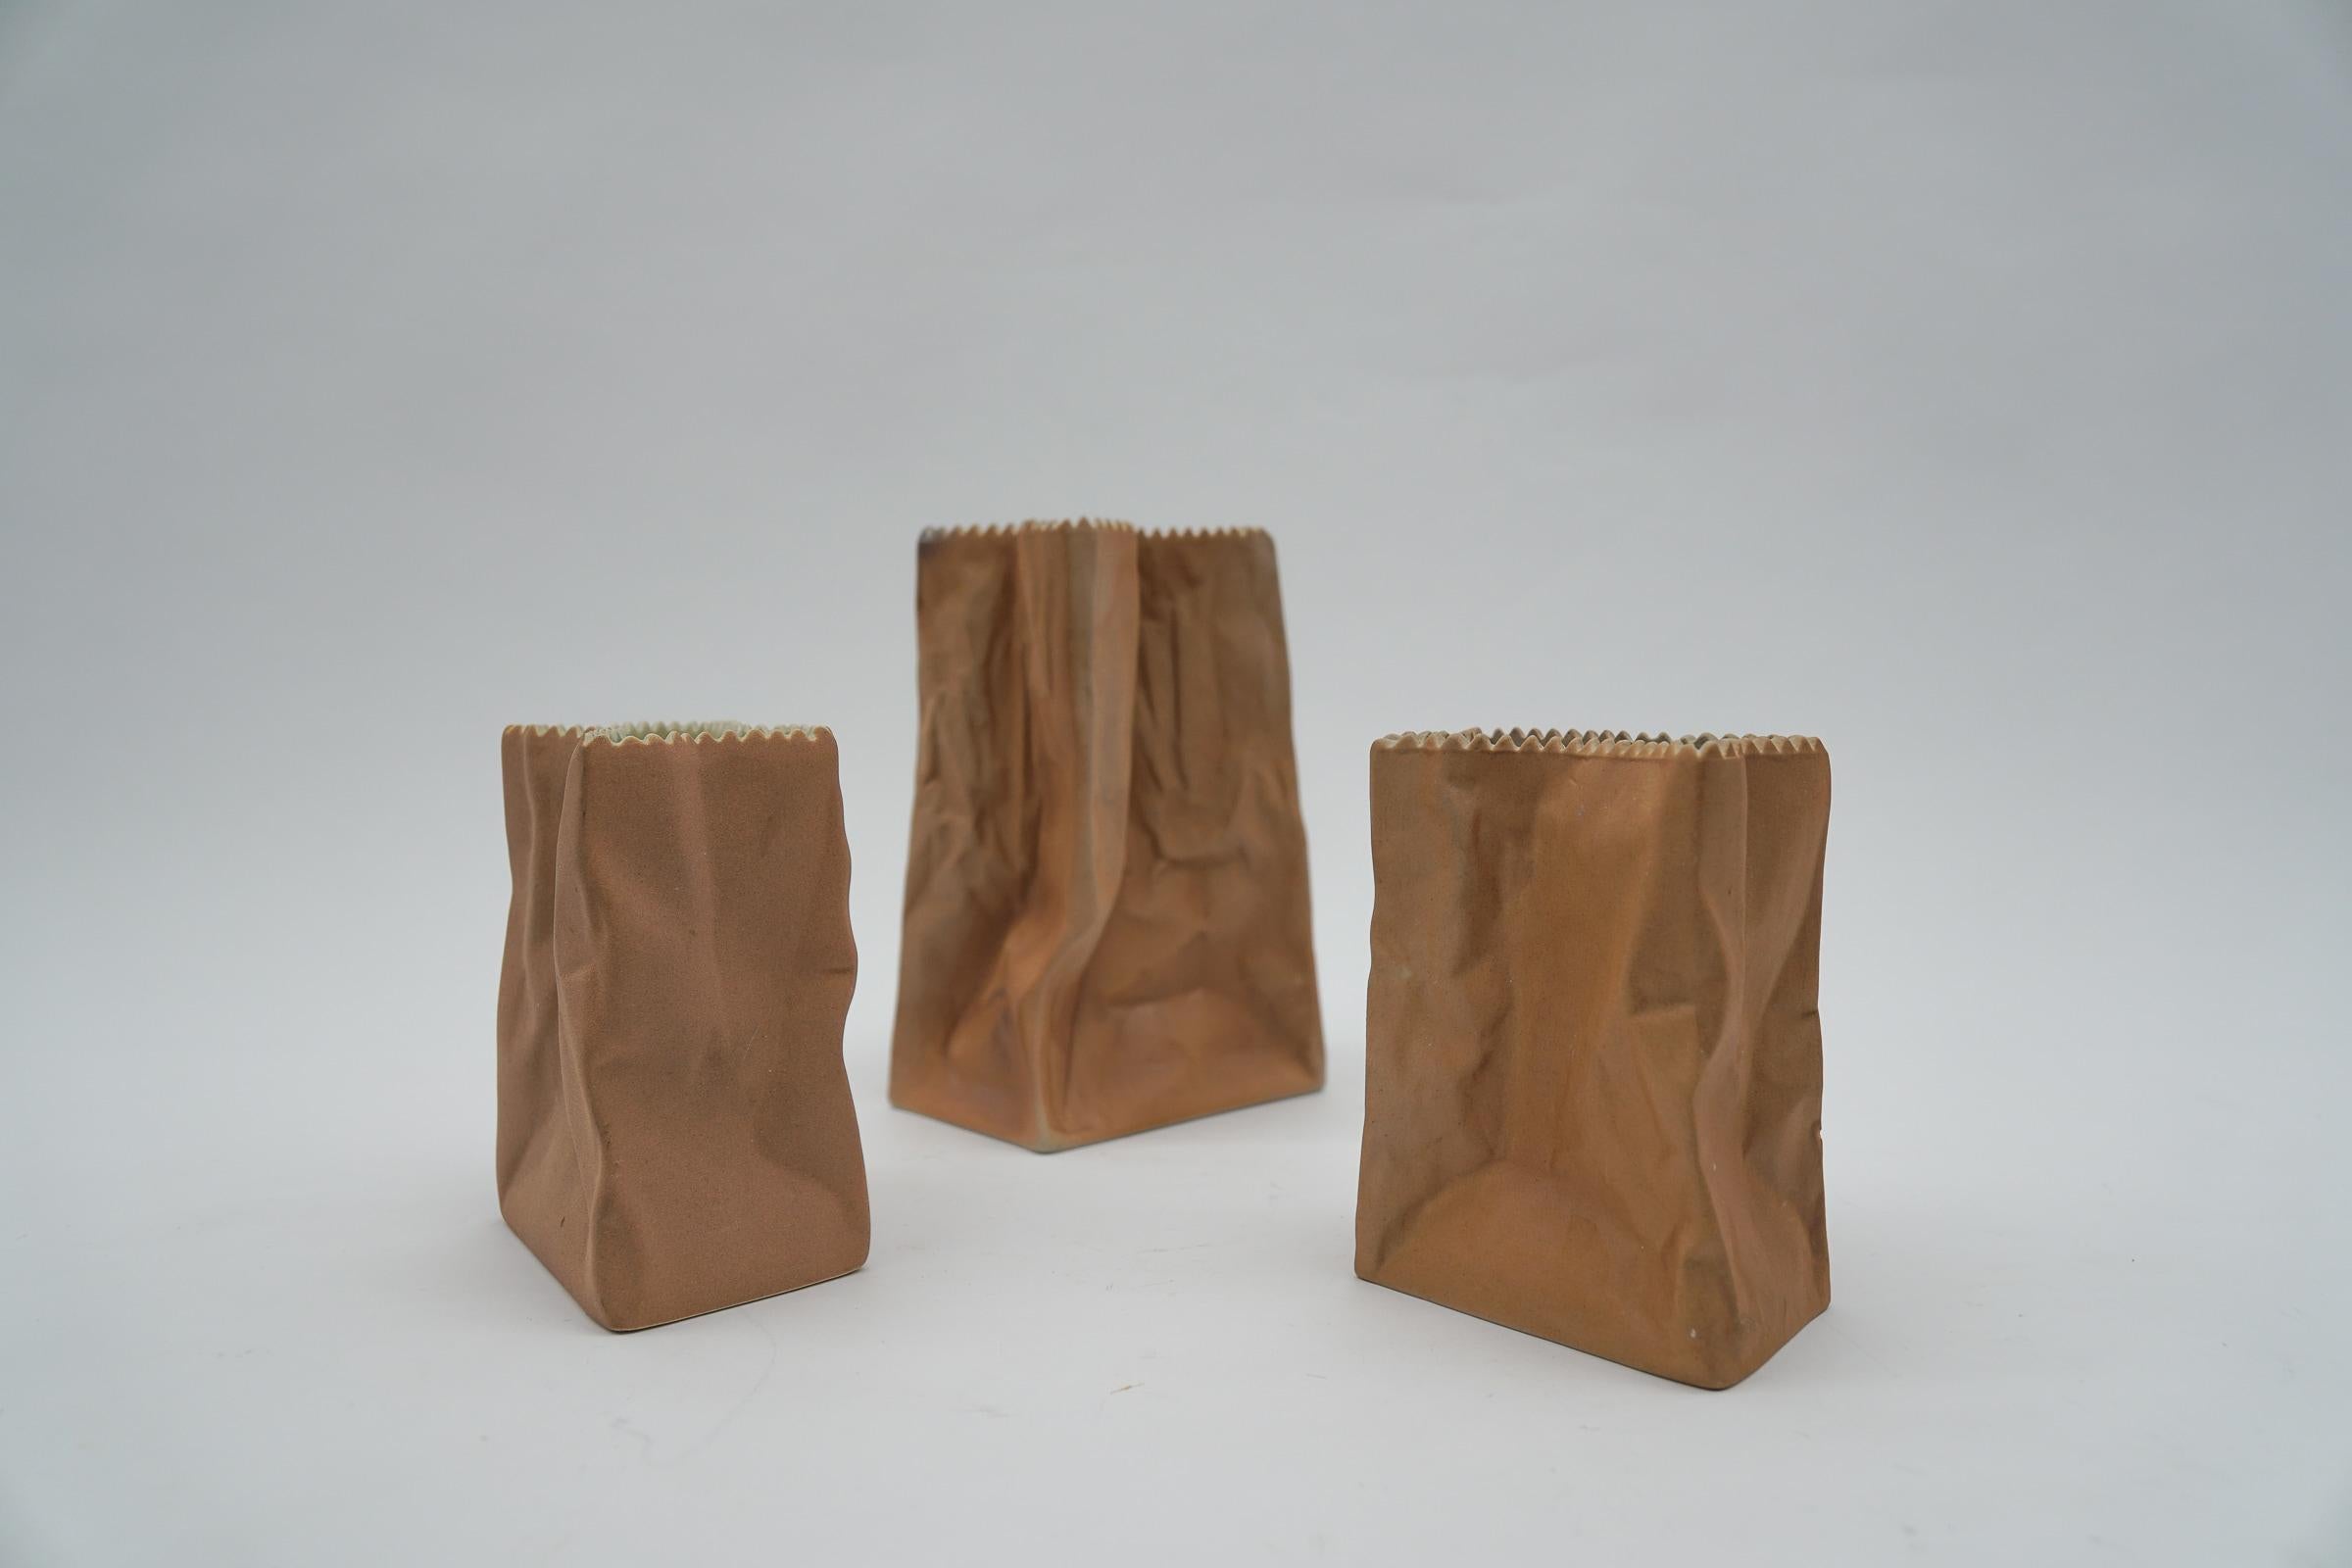 Ensemble de trois vases en sacs de papier conçus par Tapio Wirkkala et fabriqués par Rosenthal, Allemagne, 1977. 

Le grand vase mesure 15 cm de haut, 10 cm de large et 6 cm de profondeur. 
Le petit vase mesure 10 cm de haut, 8 cm de large et 5 cm